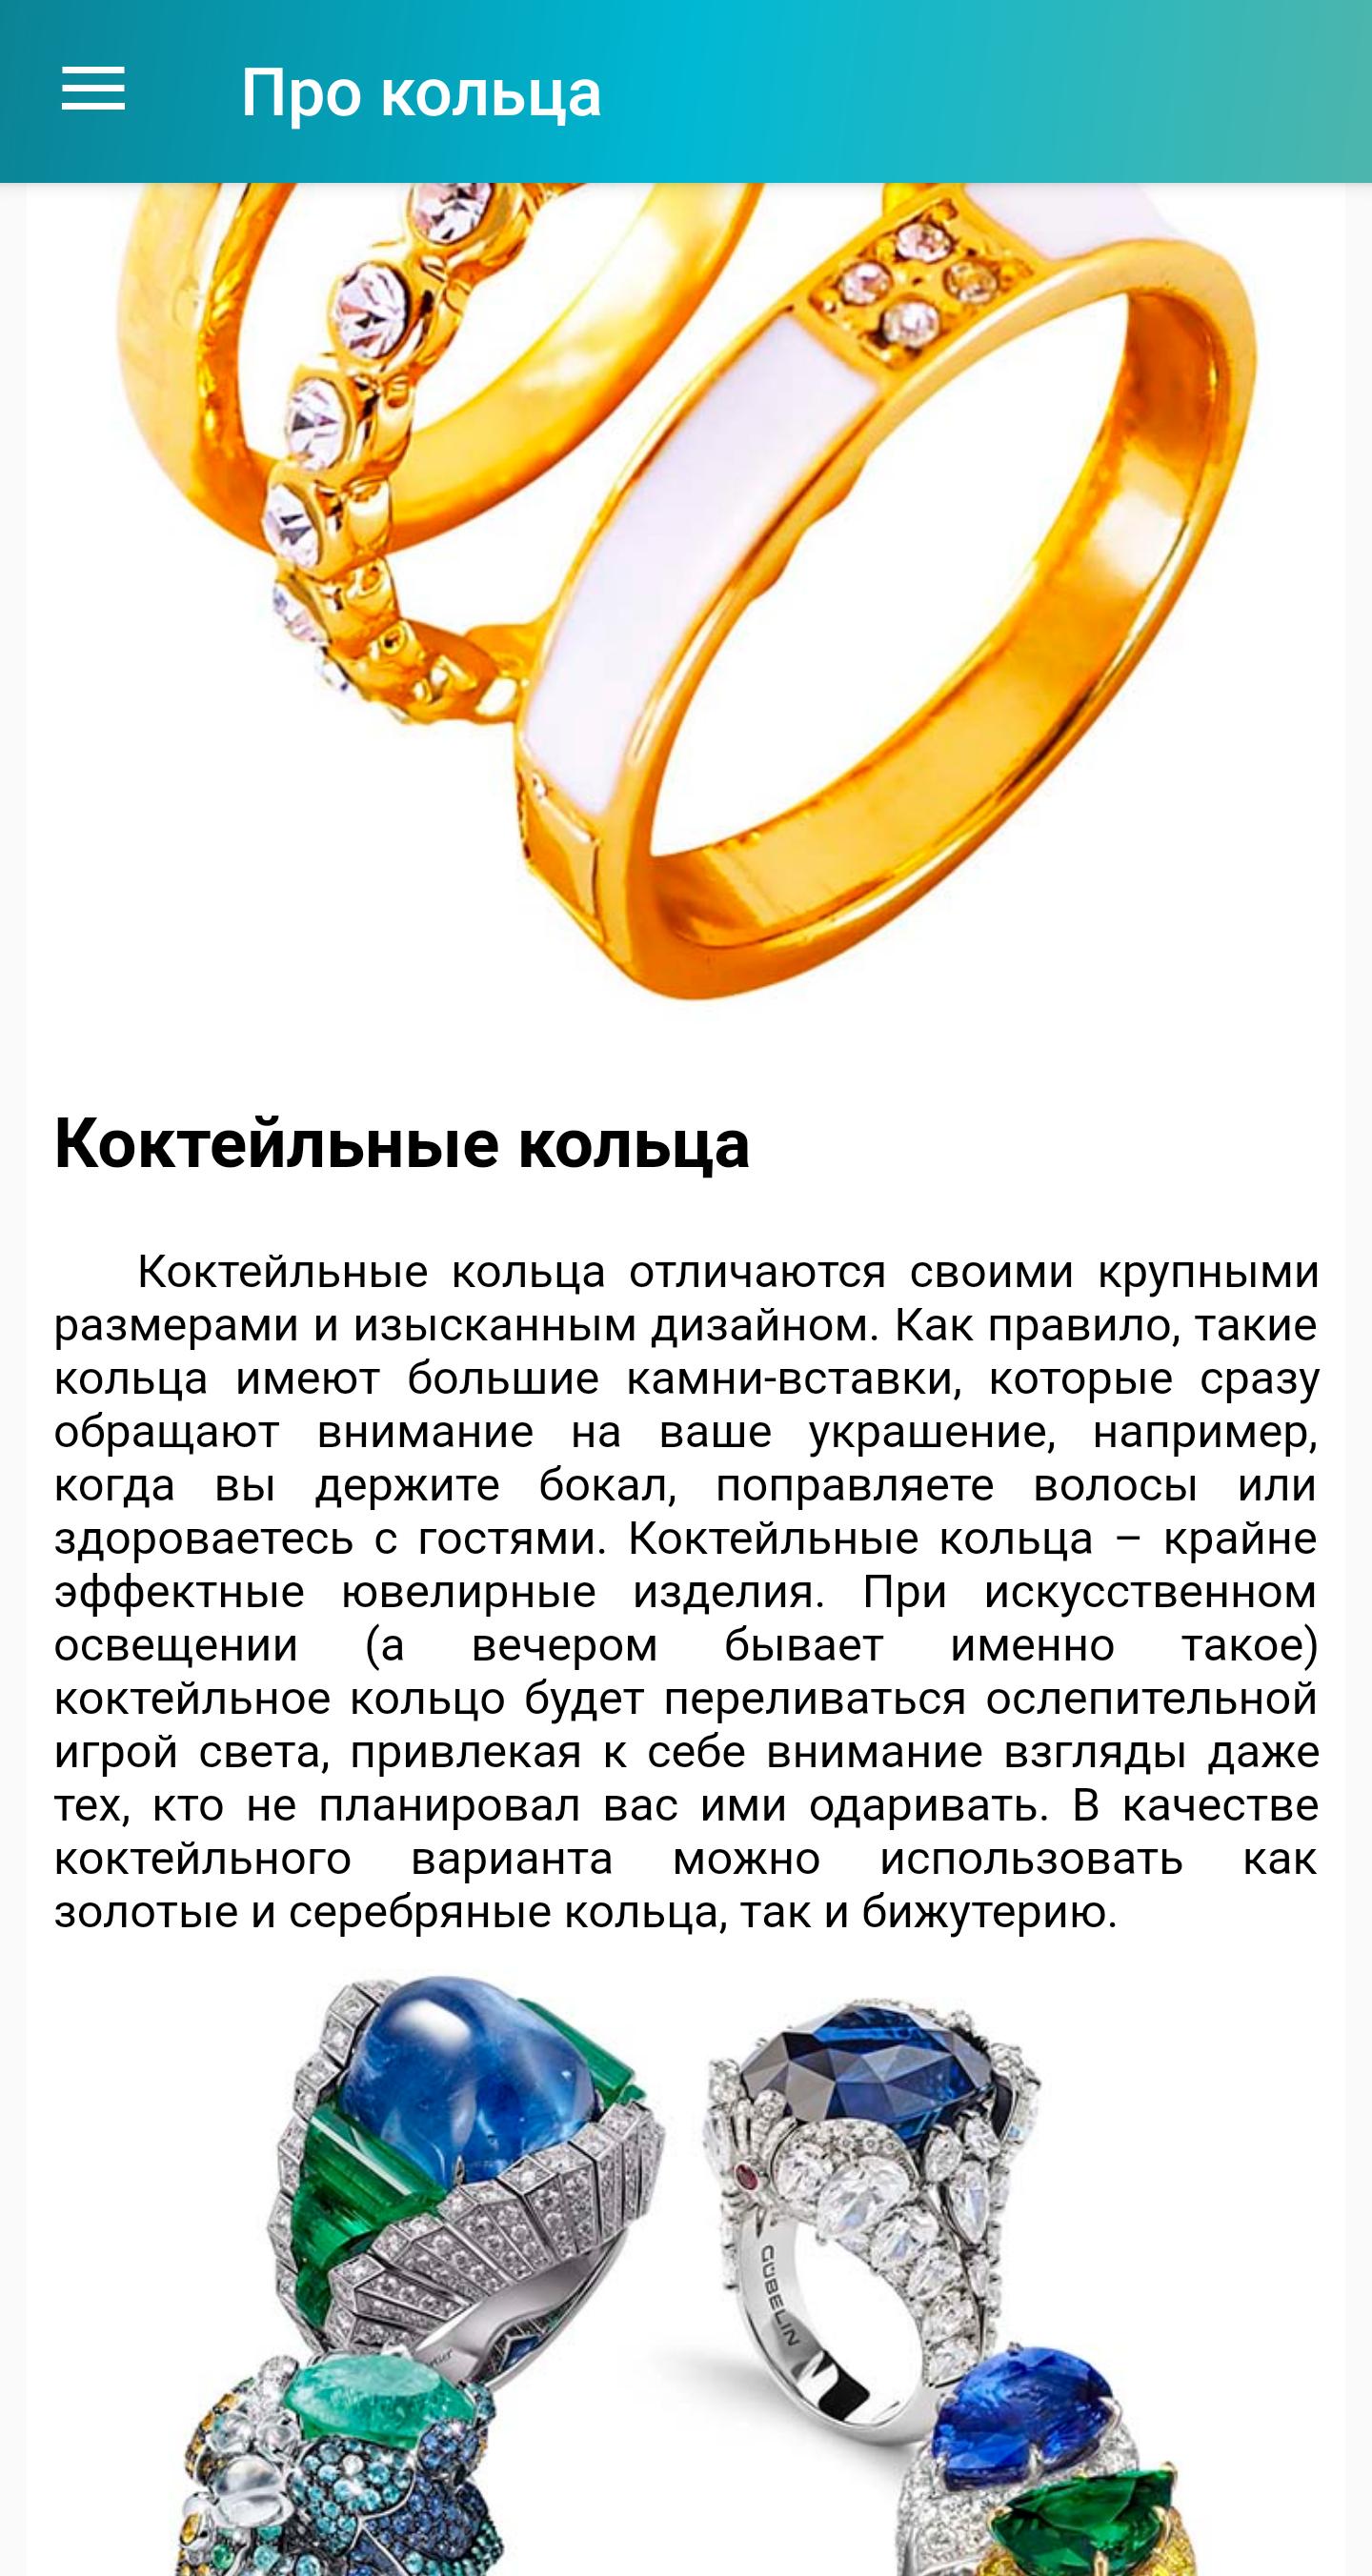 Интересные факты про кольца. Текст описание про перстень.